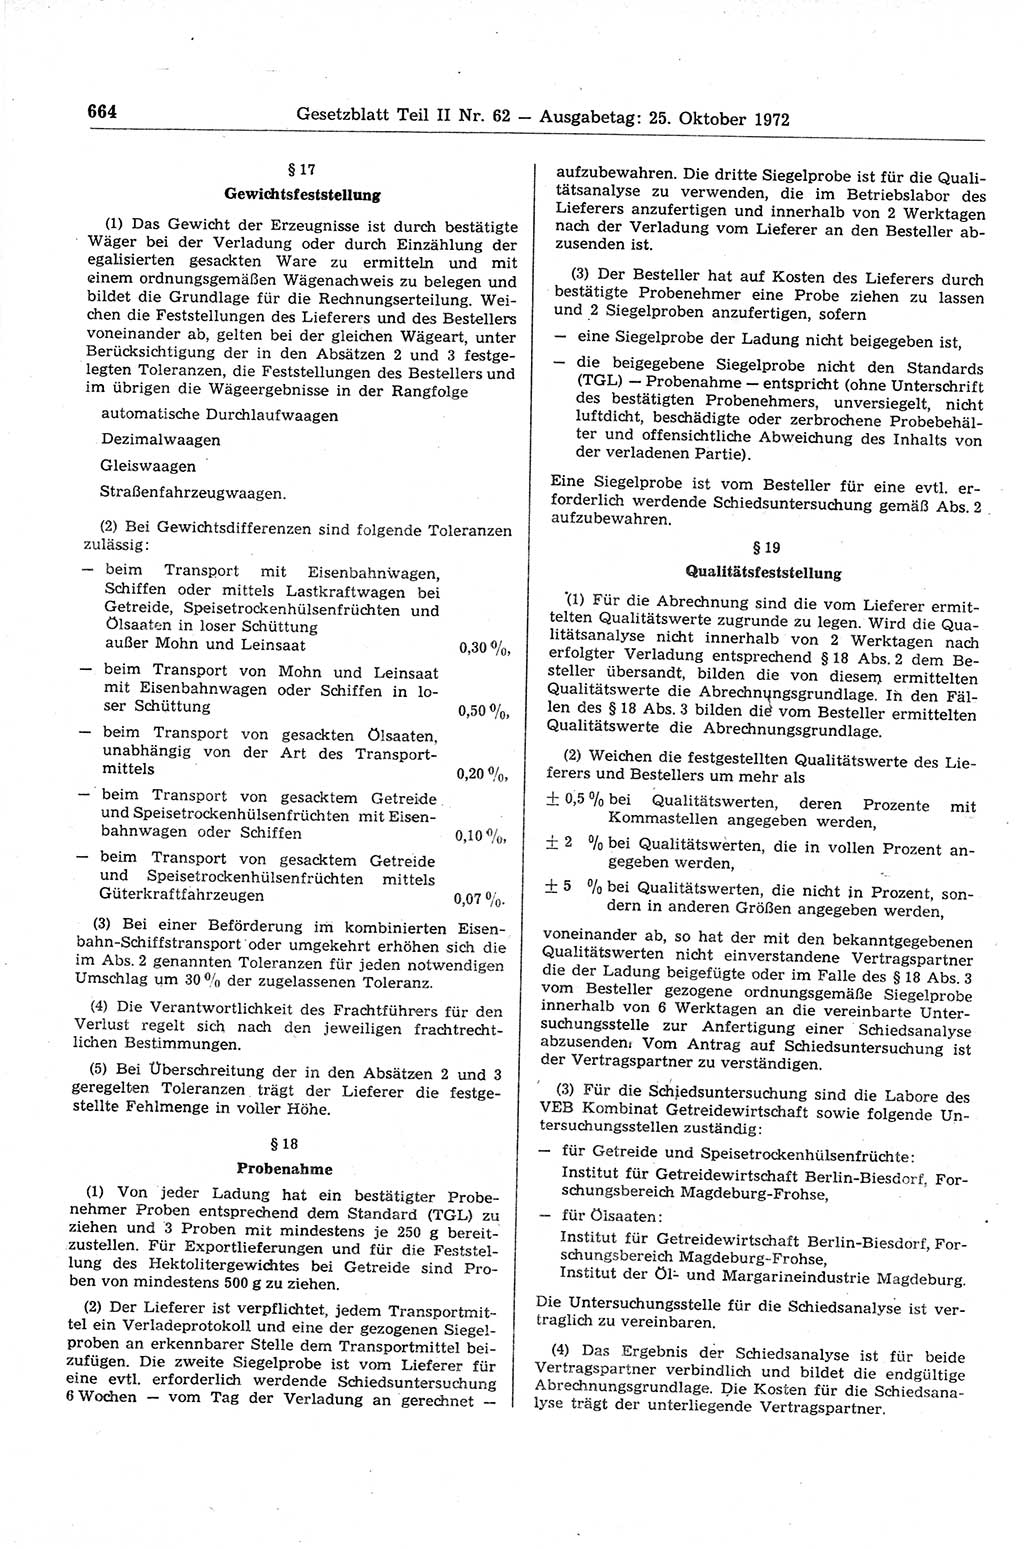 Gesetzblatt (GBl.) der Deutschen Demokratischen Republik (DDR) Teil ⅠⅠ 1972, Seite 664 (GBl. DDR ⅠⅠ 1972, S. 664)